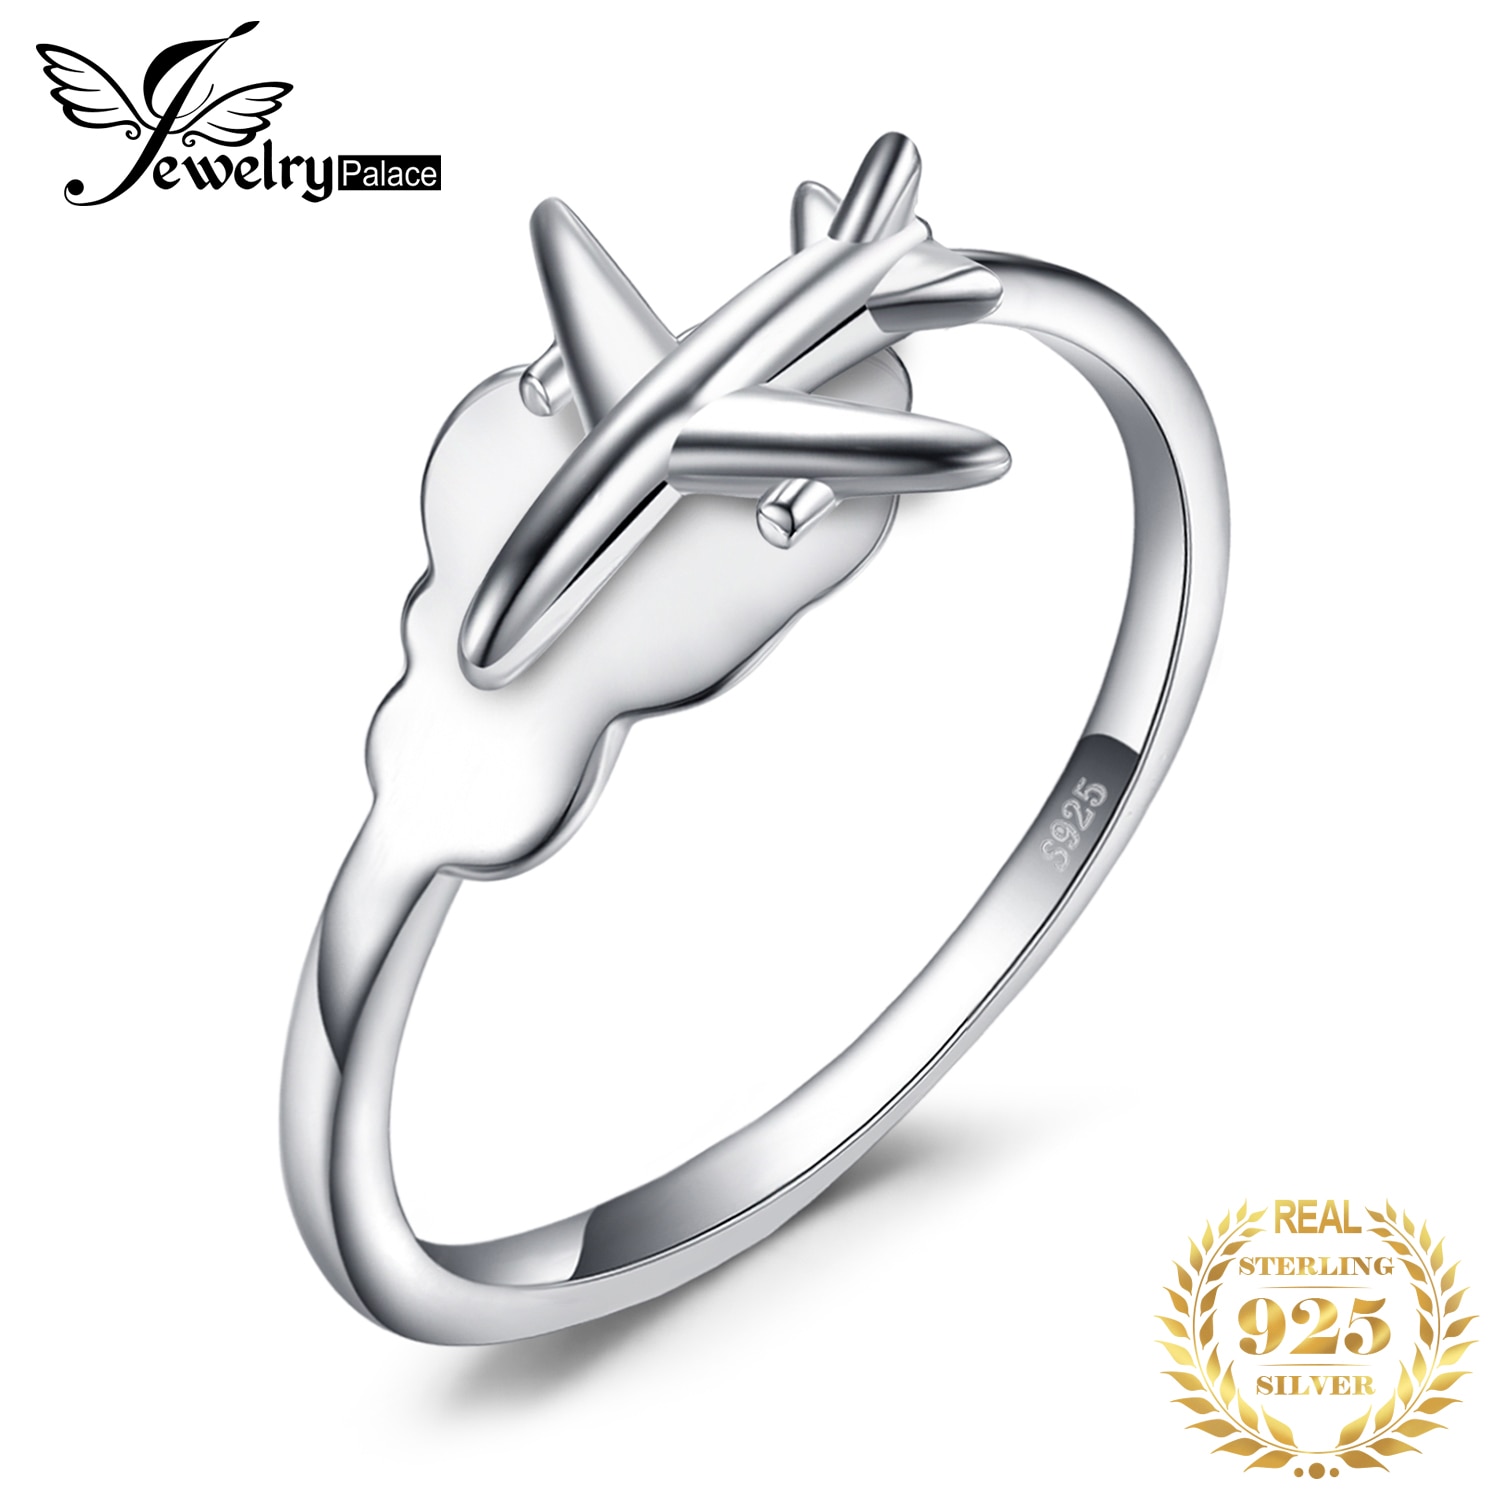 Jewelrypalace Global Vliegtuig Ring 925 Sterling Zilveren Ringen Voor Vrouwen Open Stapelbaar Ringen Zilver 925 Sieraden Fijne Sieraden